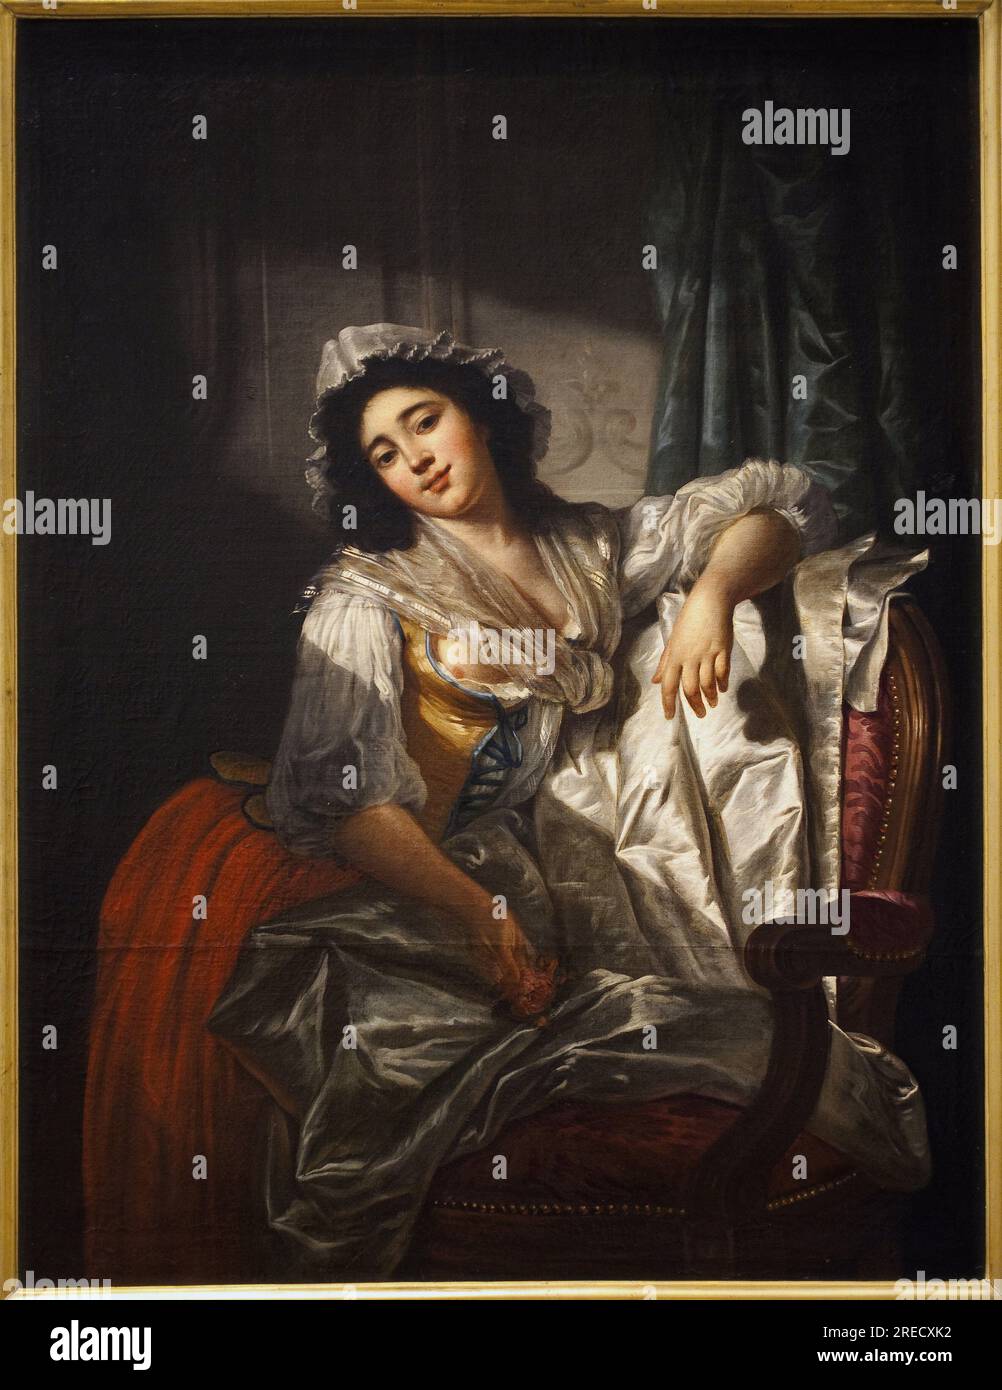 Portrait de Madame Sermet ou la rose et le bouton. Peinture de Joseph Roques (1754-1847), huile sur toile vers 1788. Art francais, 18e siecle. Musée des Beaux Arts de Toulouse. Banque D'Images